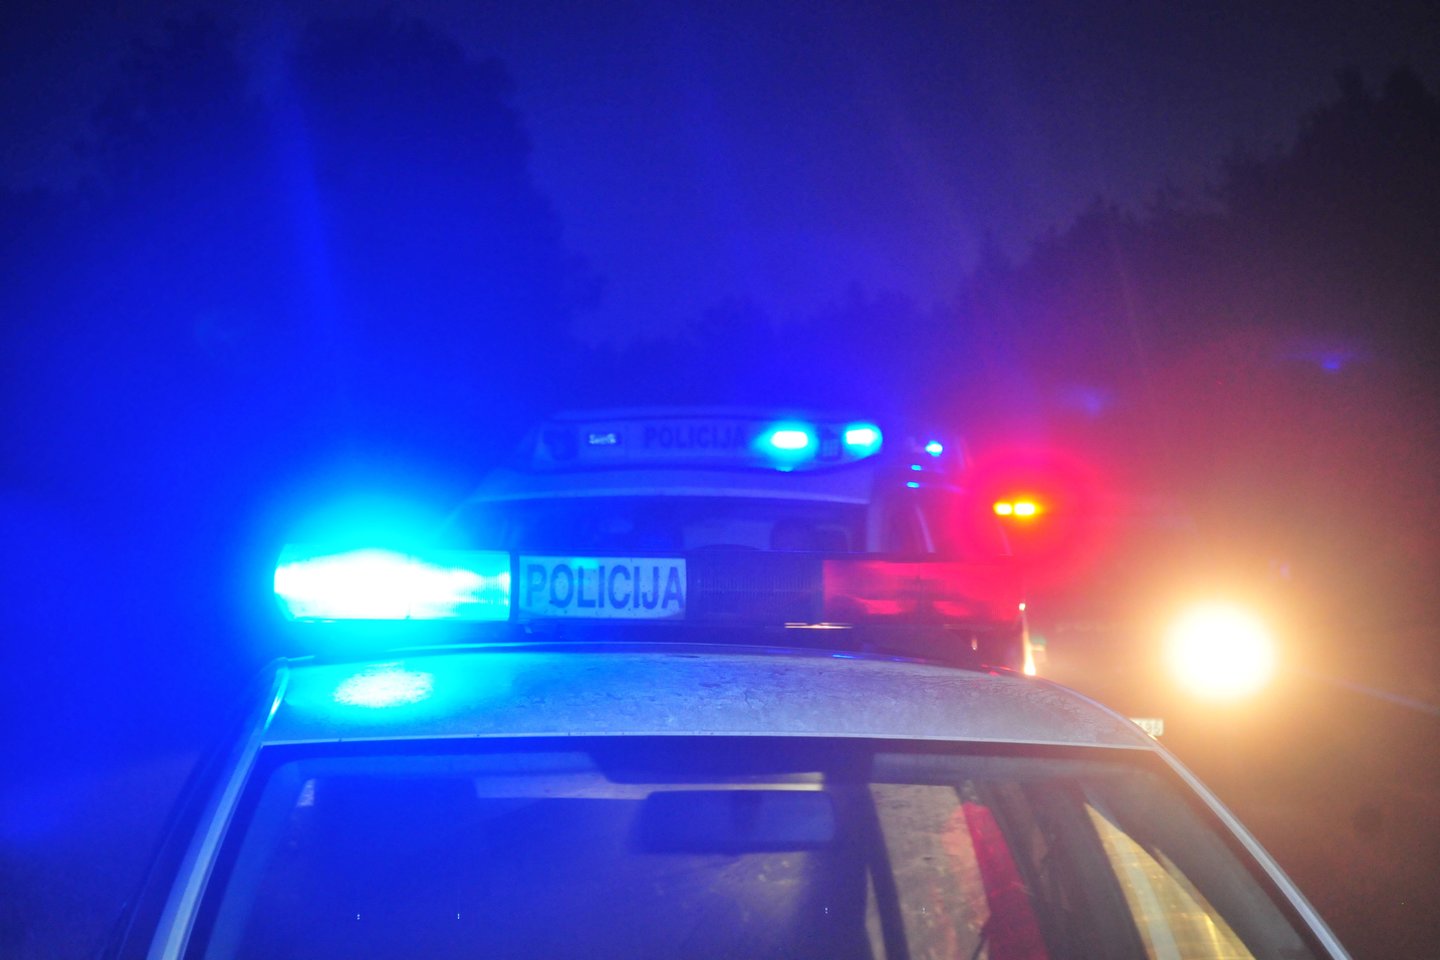 Radviliškio rajone pavogtu BMW automobiliu vyrui ilgai džiaugtis neteko: pareigūnai jį sulaikė Kėdainių rajone.<br>A.Vaitkevičiaus asociatyvi nuotr.